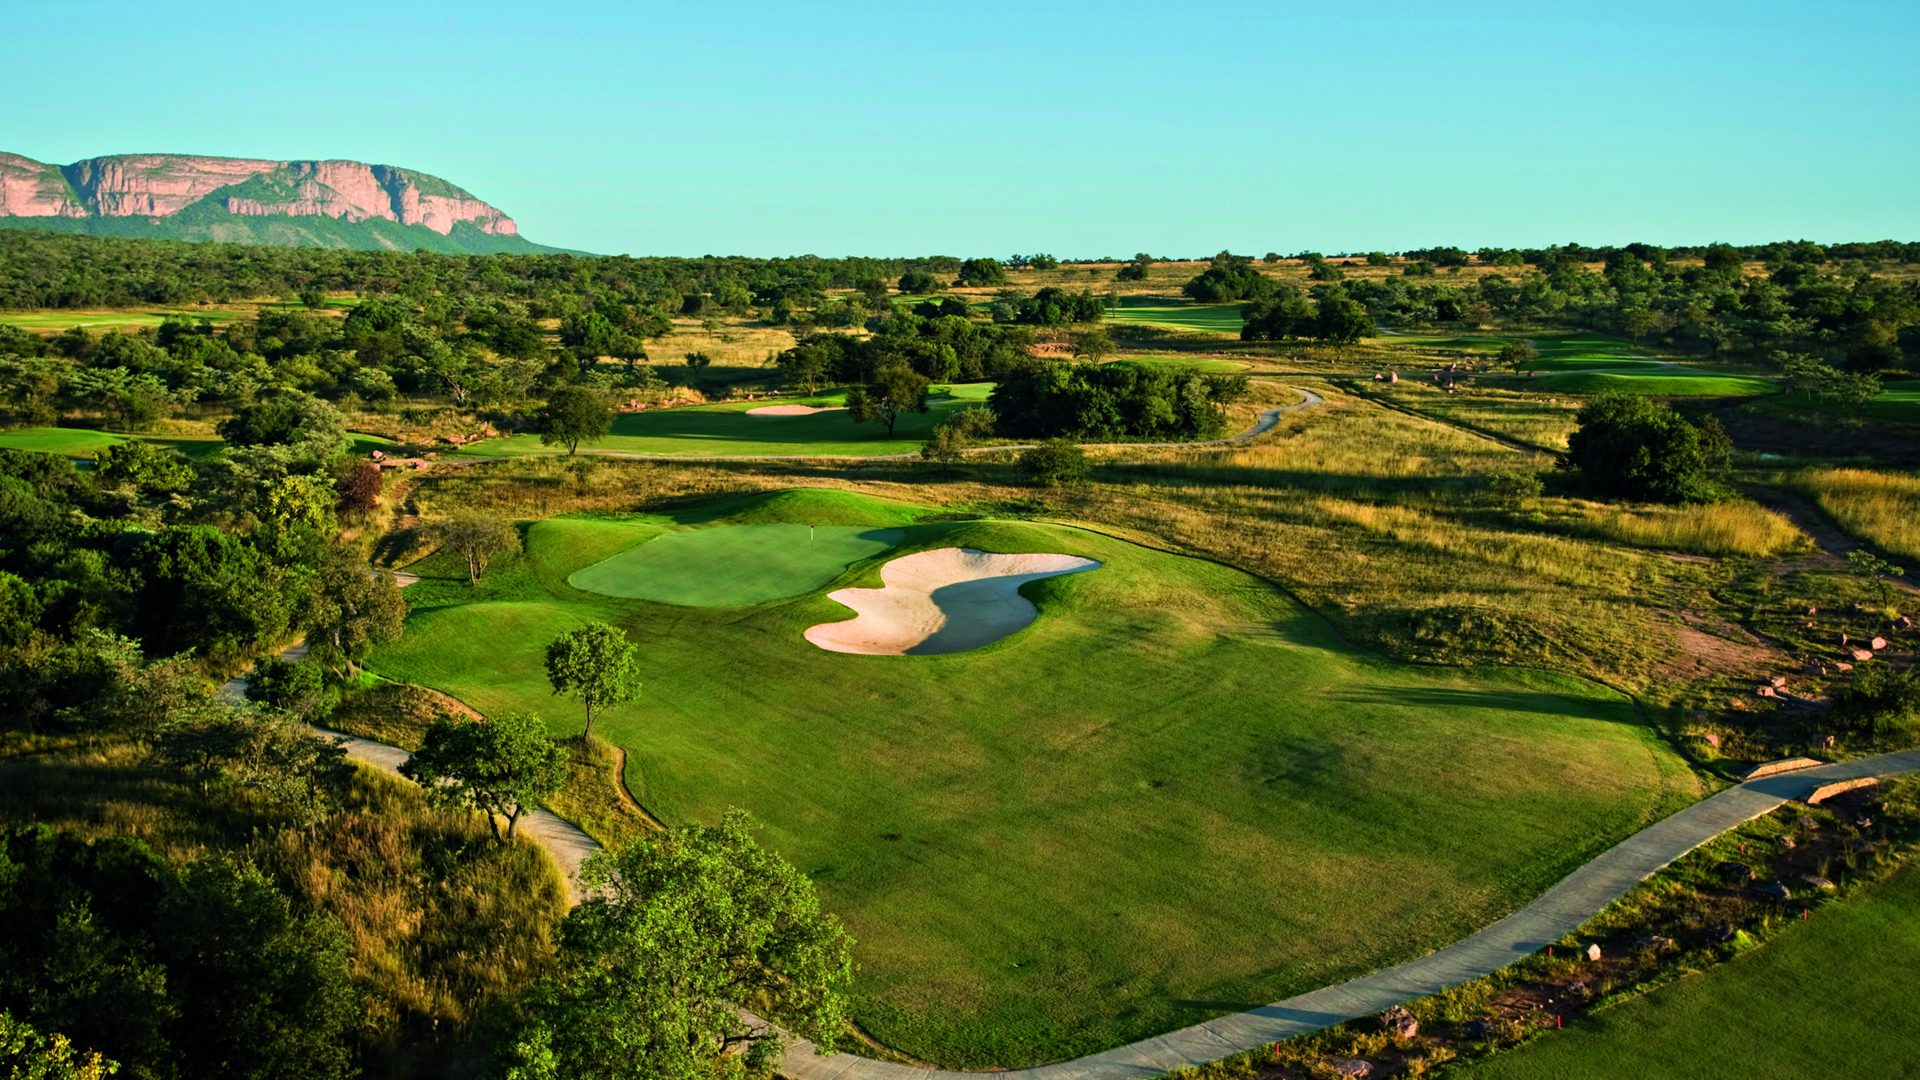 Legend Golf Resort Ein Golfplatz als Naturschauspiel  und mit bis zu 7.748 Metern einer der längsten der Welt!